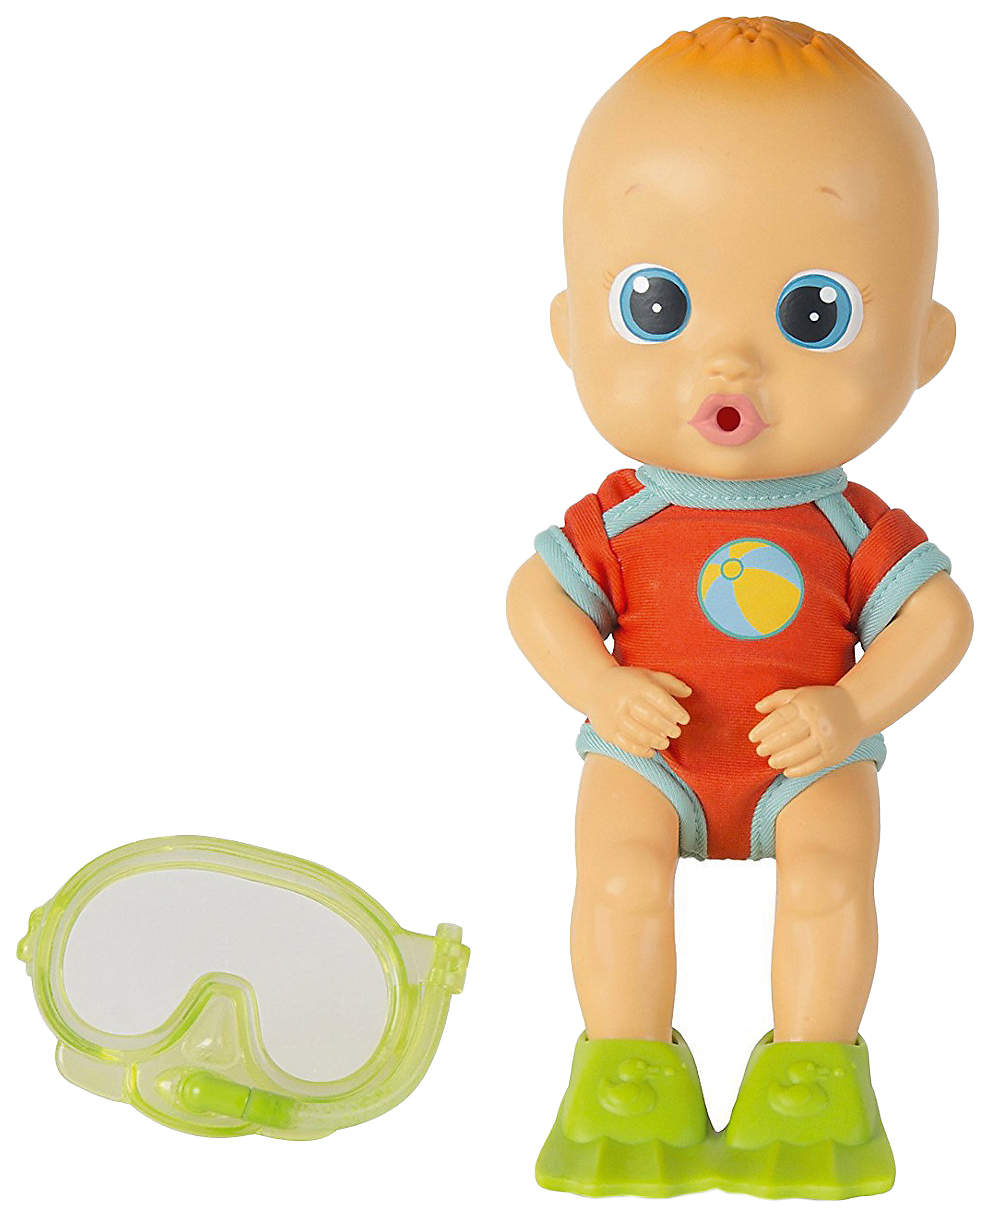 Кукла для купания Bloopies - Коби, в открытой коробке, 24 см IMC toys imc toys bloopies кукла для купания коби в открытой коробке